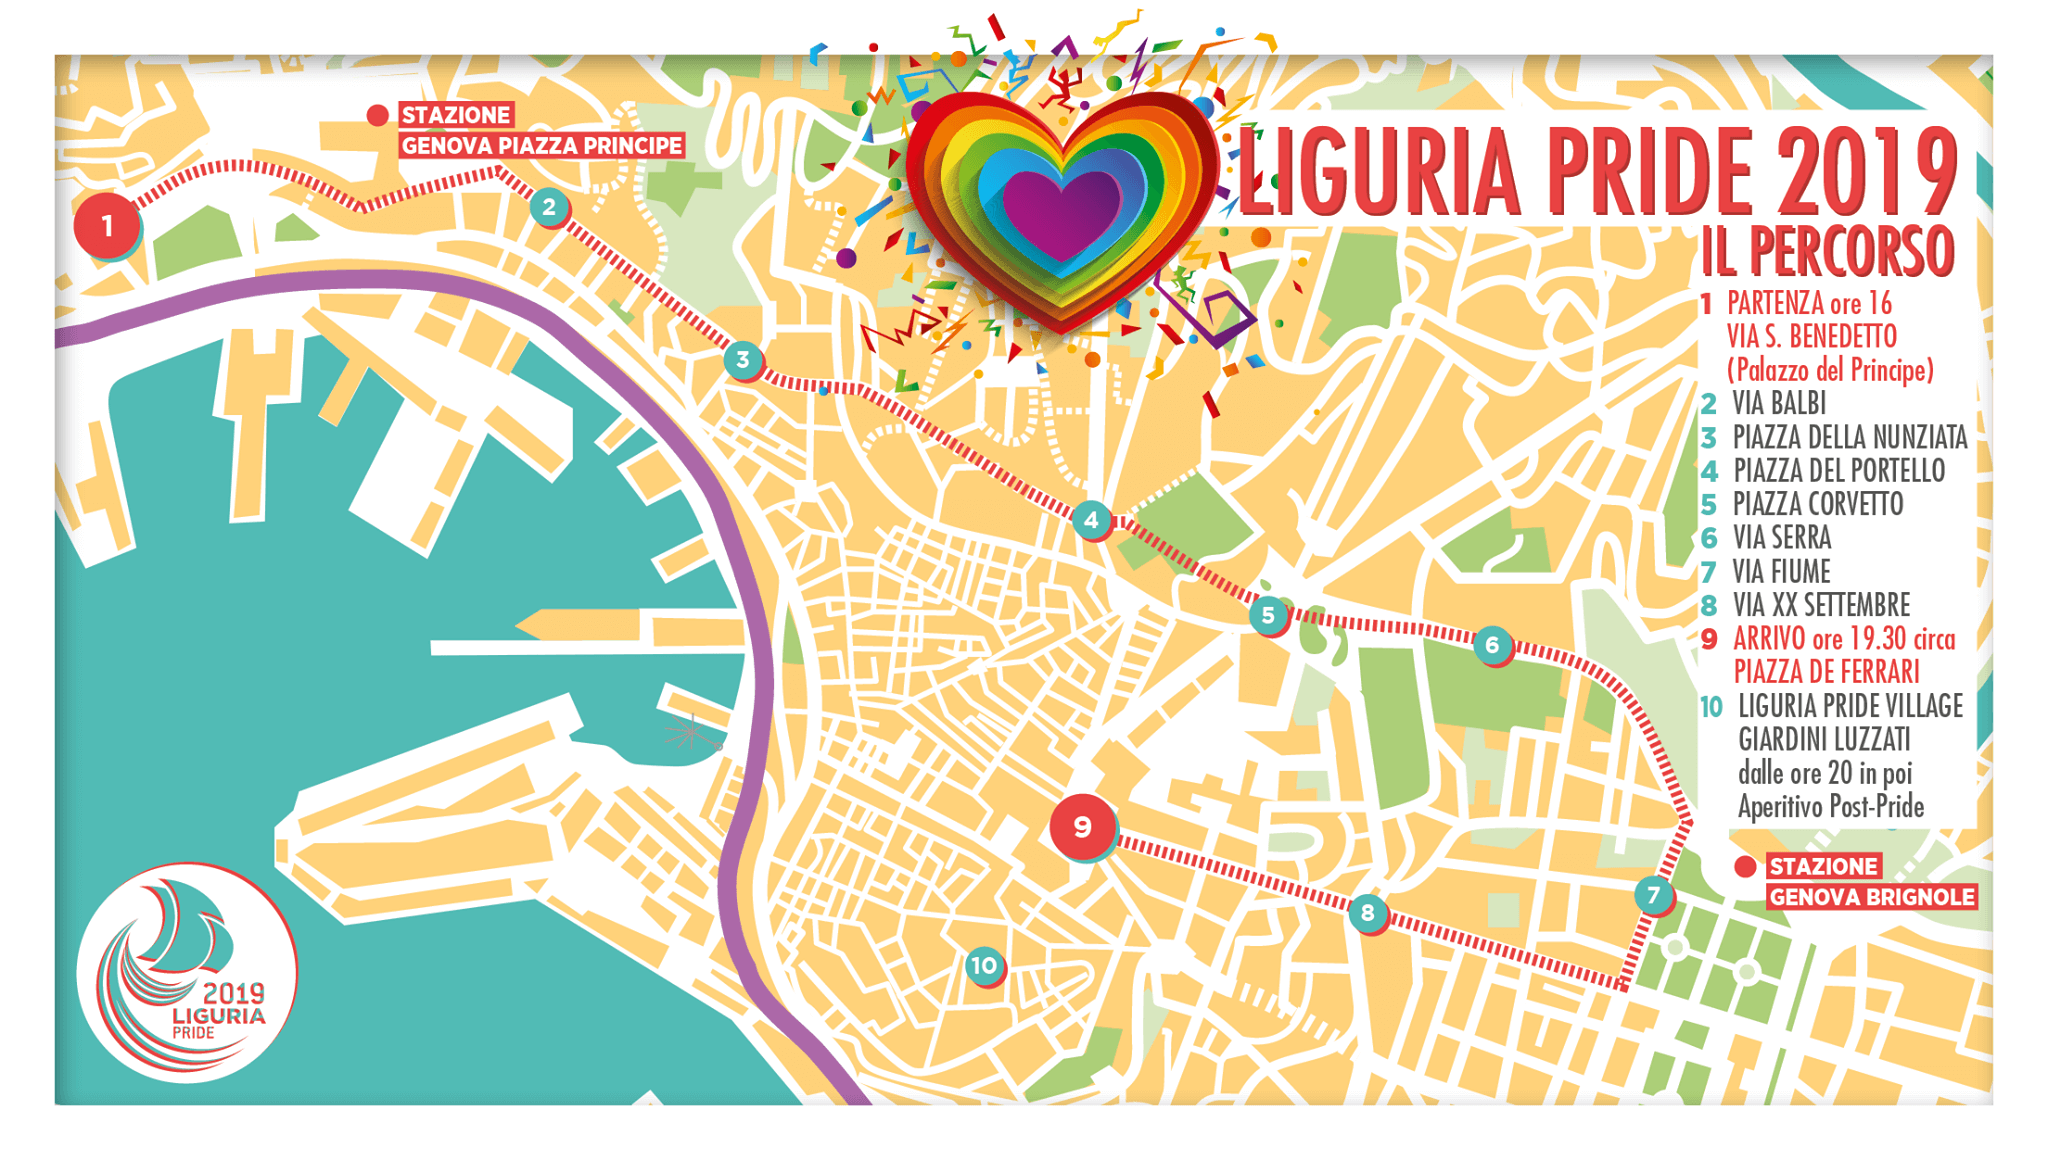 Onda Pride, è il giorno di Genova, Torino, Varese, Vicenza, Avellino e Brescia - genova pride - Gay.it